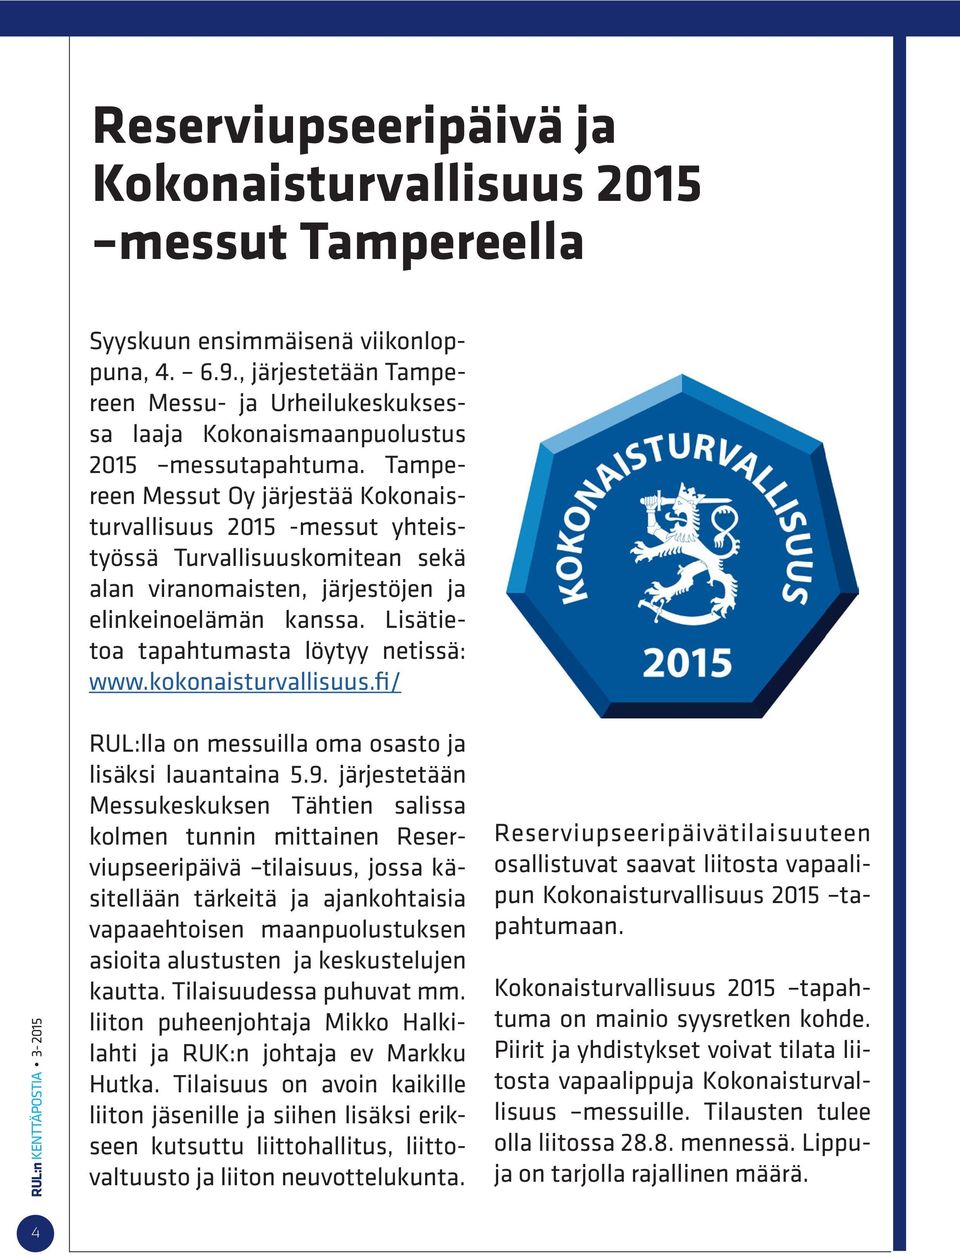 Tampereen Messut Oy järjestää Kokonaisturvallisuus 2015 -messut yhteistyössä Turvallisuuskomitean sekä alan viranomaisten, järjestöjen ja elinkeinoelämän kanssa.